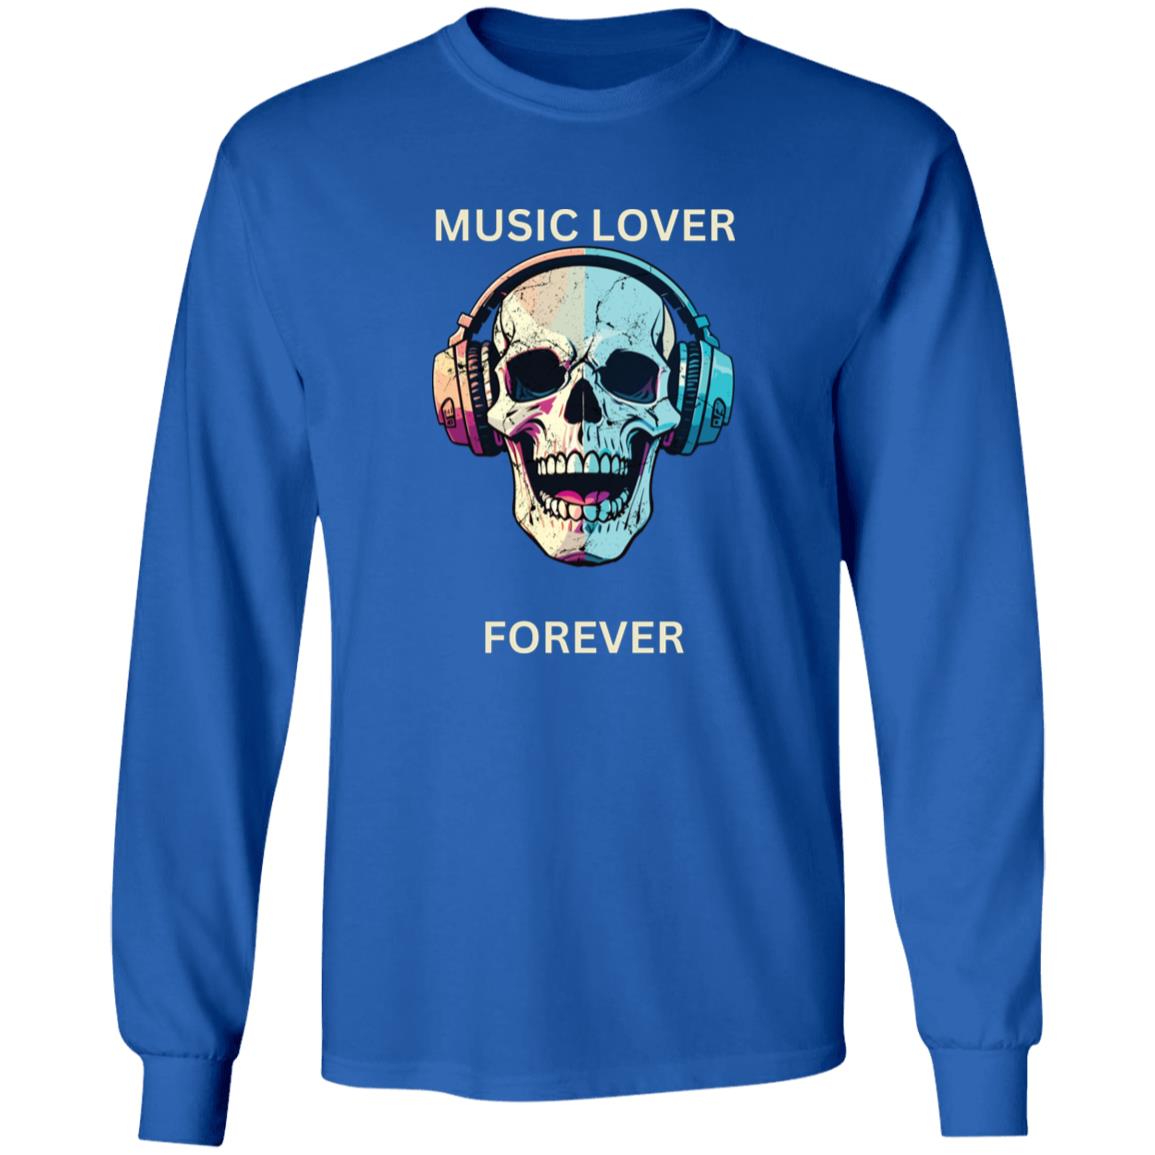 Music, lover, forever